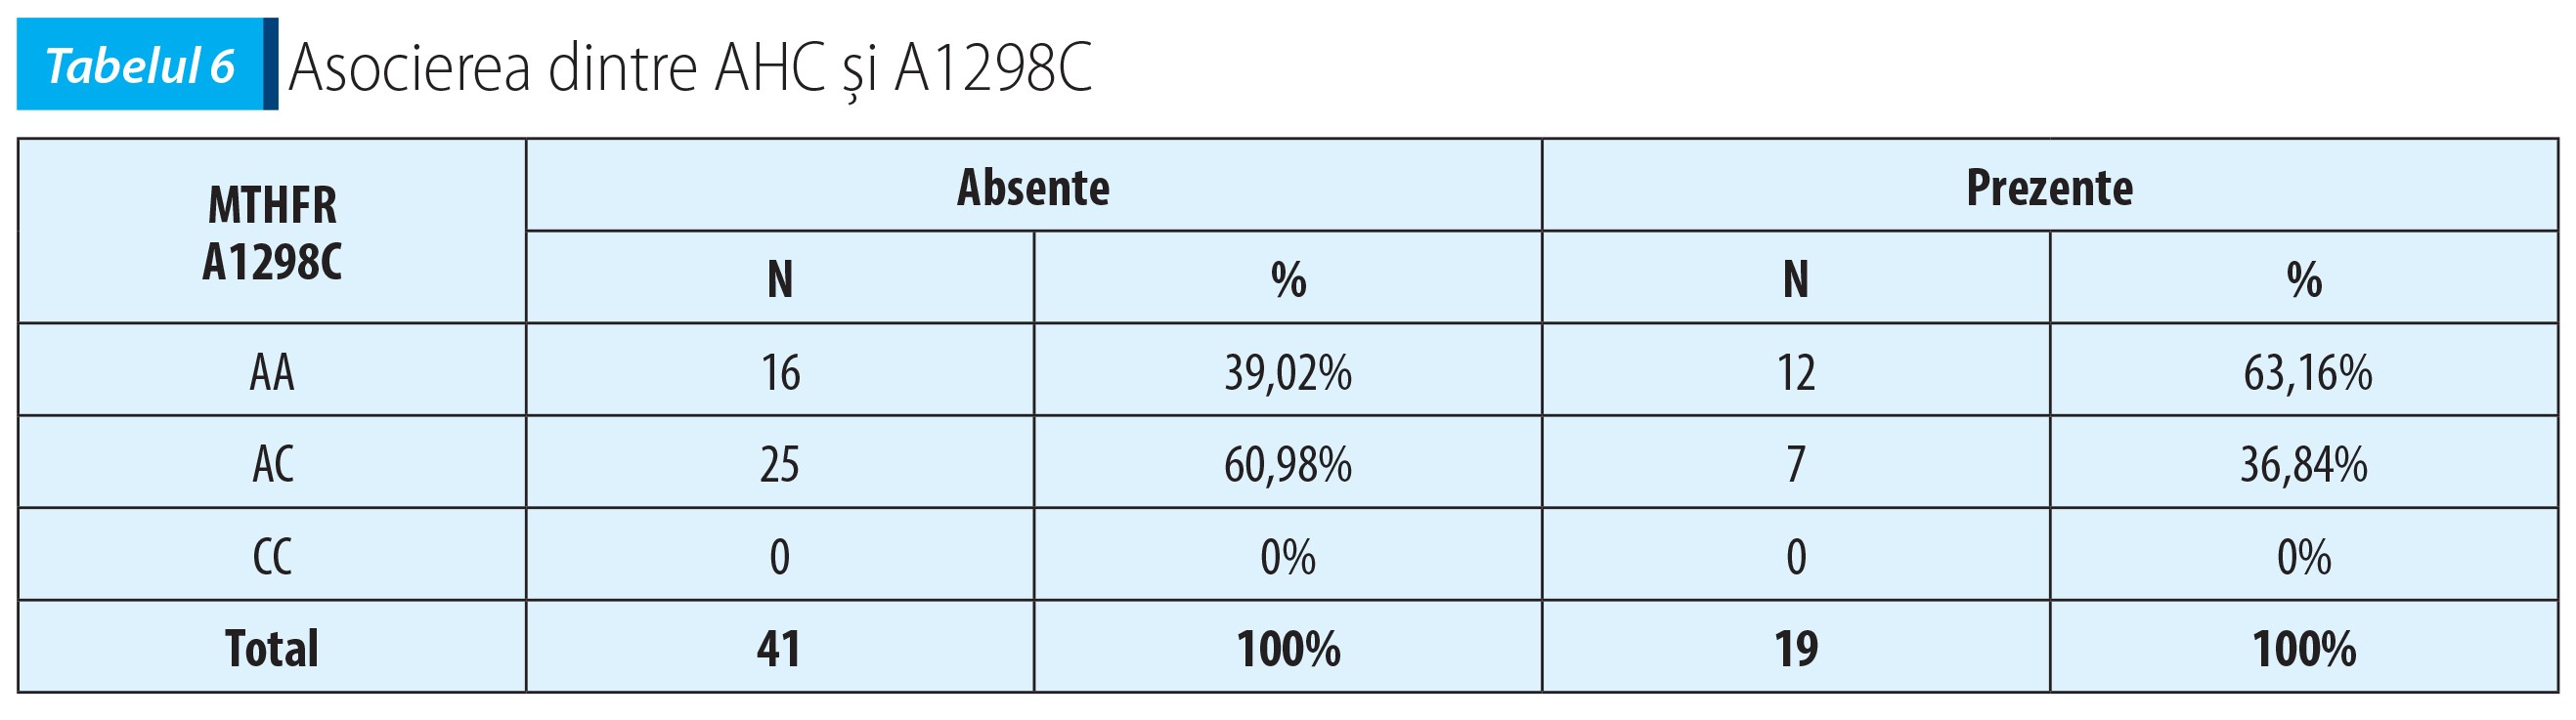 Tabelul 6; Asocierea dintre AHC și A1298C